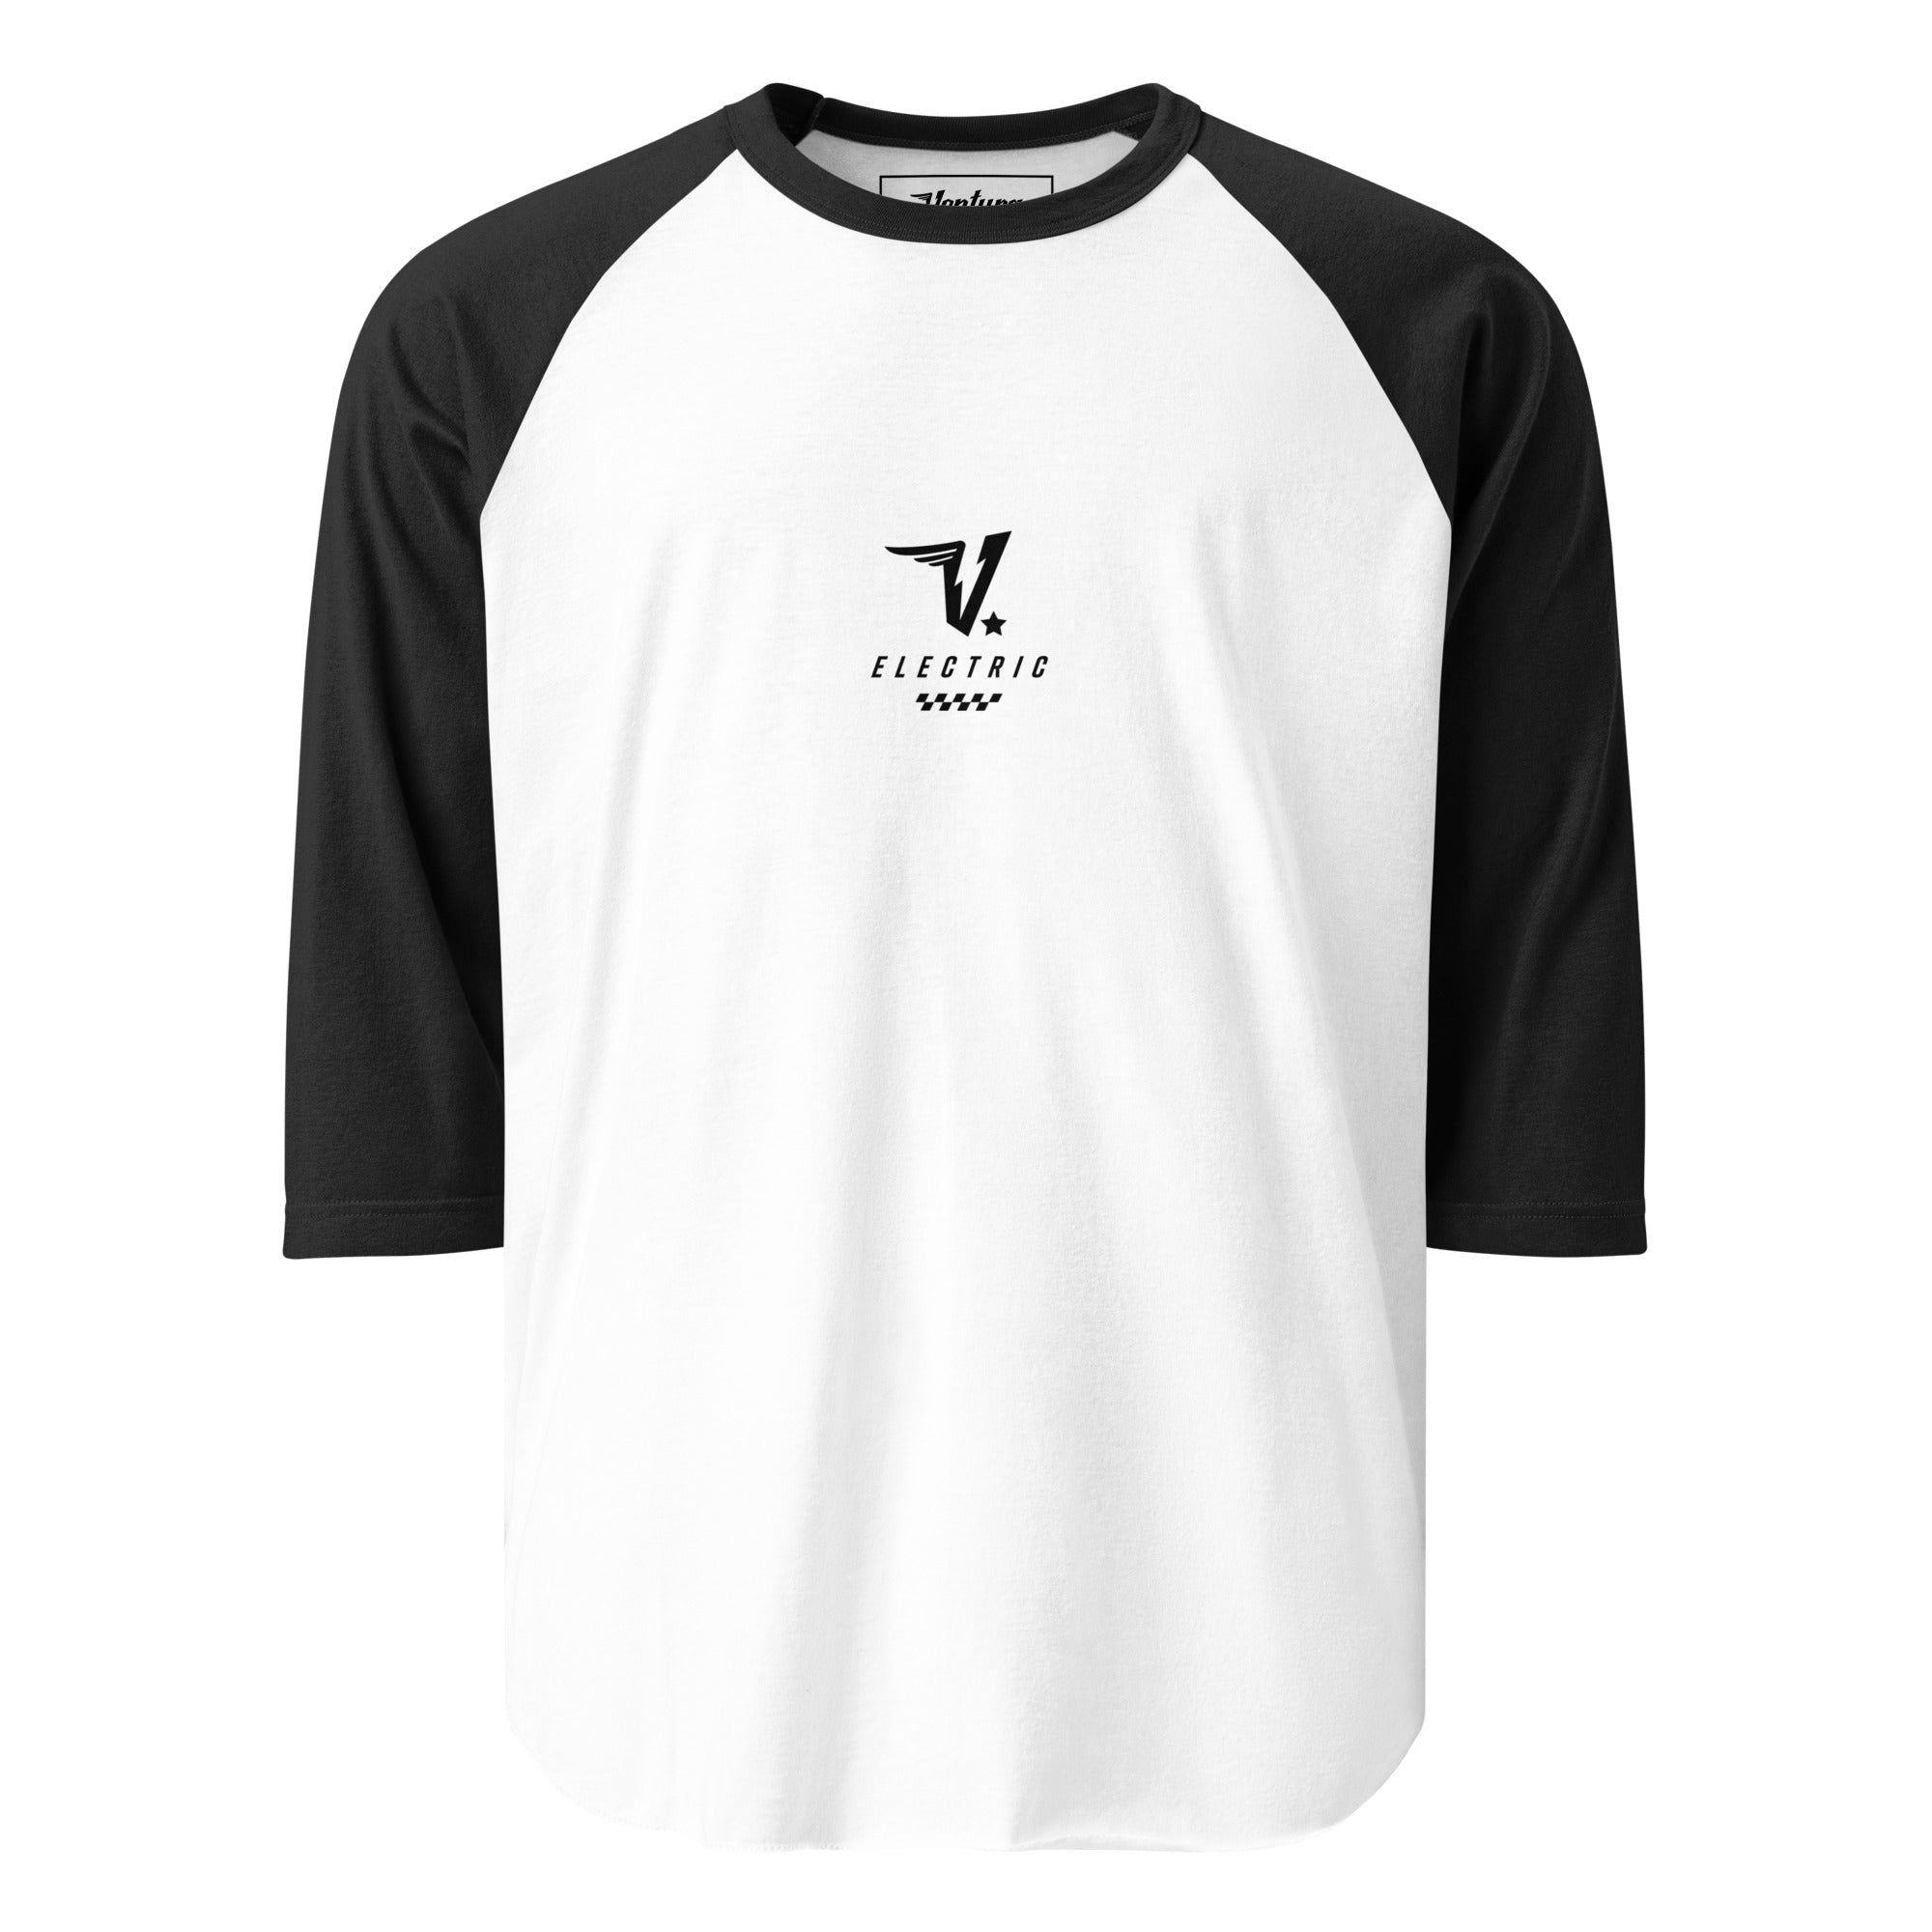 V Electric 3/4 sleeve raglan shirt